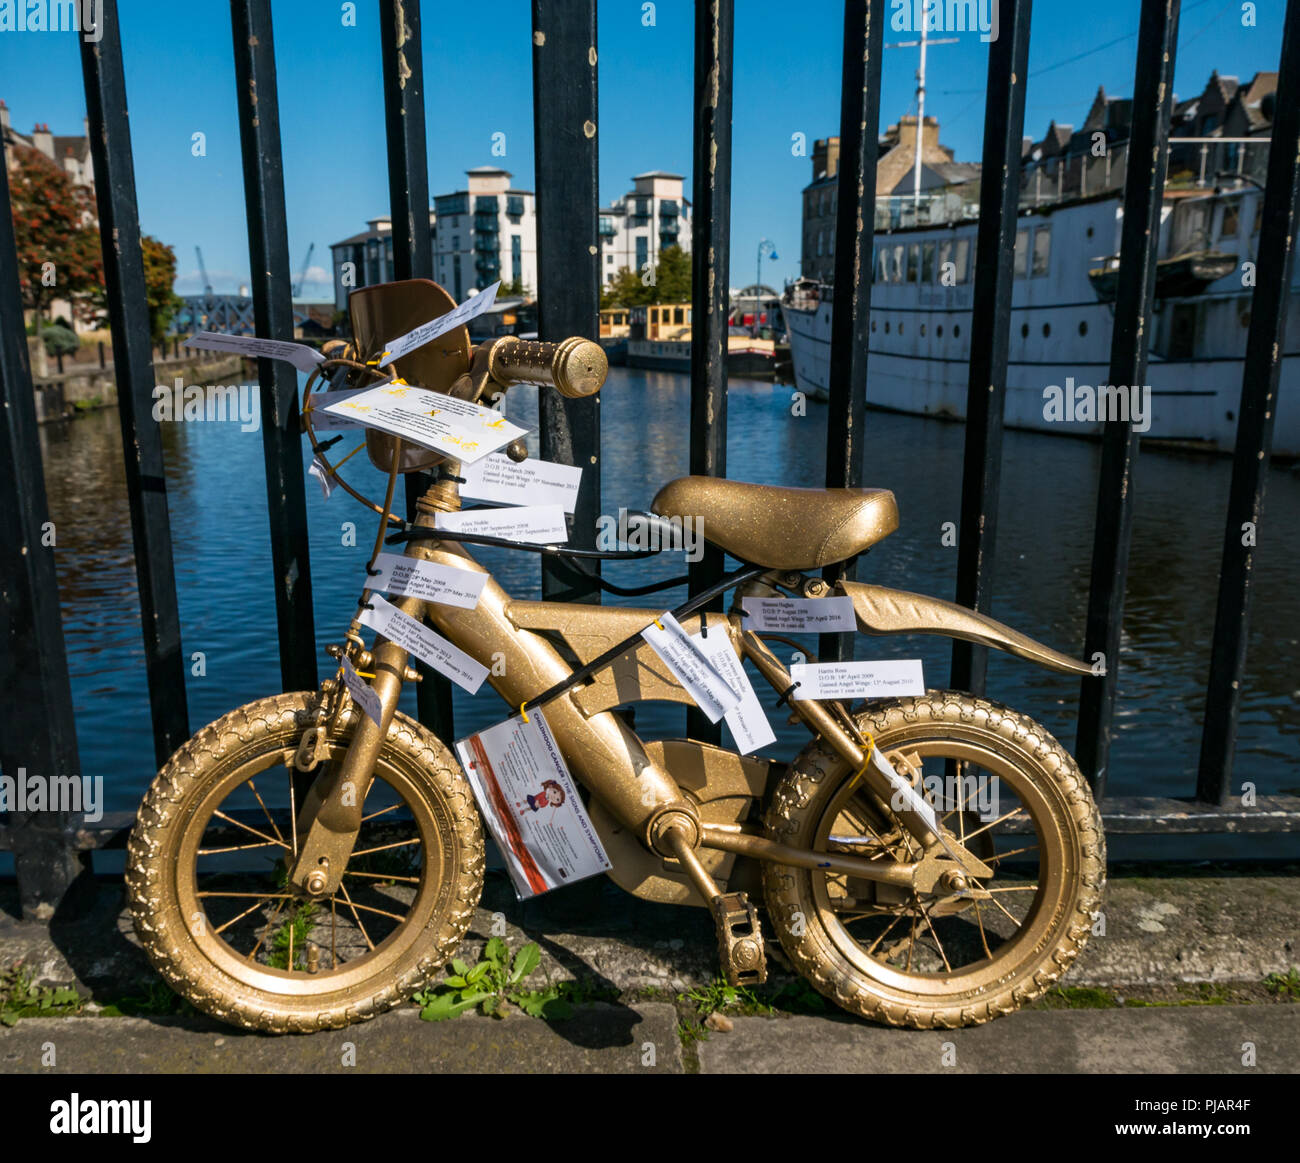 Meldung auf dem Fahrrad's Gold lackiert Kind, das Ufer, Leith, Schottland, UK, Leuchten für Gold September Kampagne von Krebs im Kindesalter zu erhöhen Stockfoto